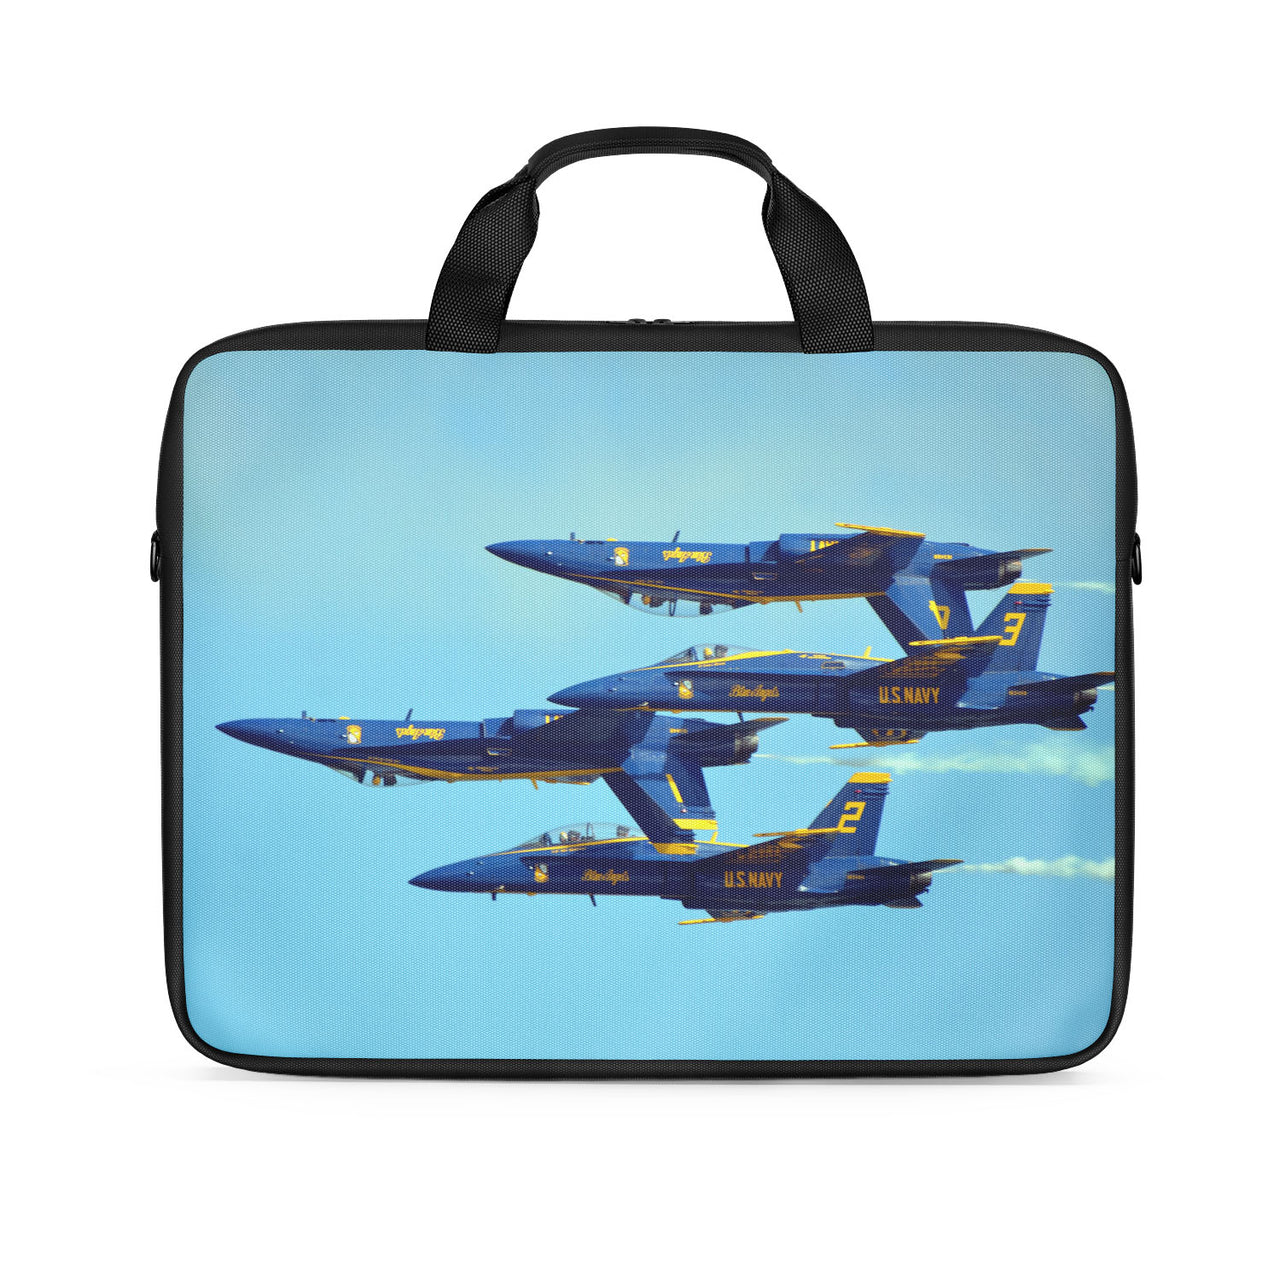 US Navy Blue Angels Designed Laptop & Tablet Bags